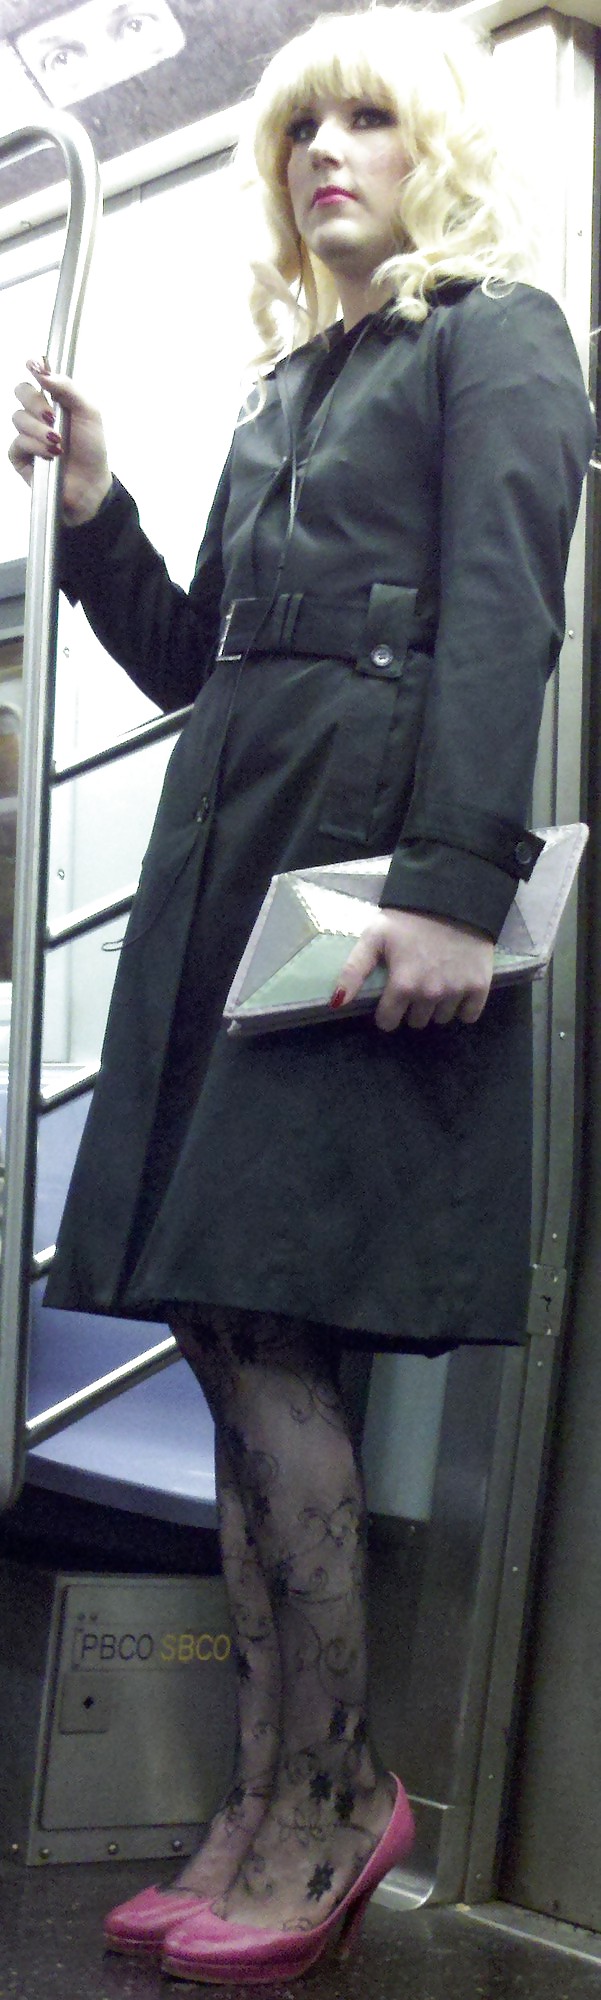 Ragazze della metropolitana di New York 107 il tipo sembra una signora
 #6603924